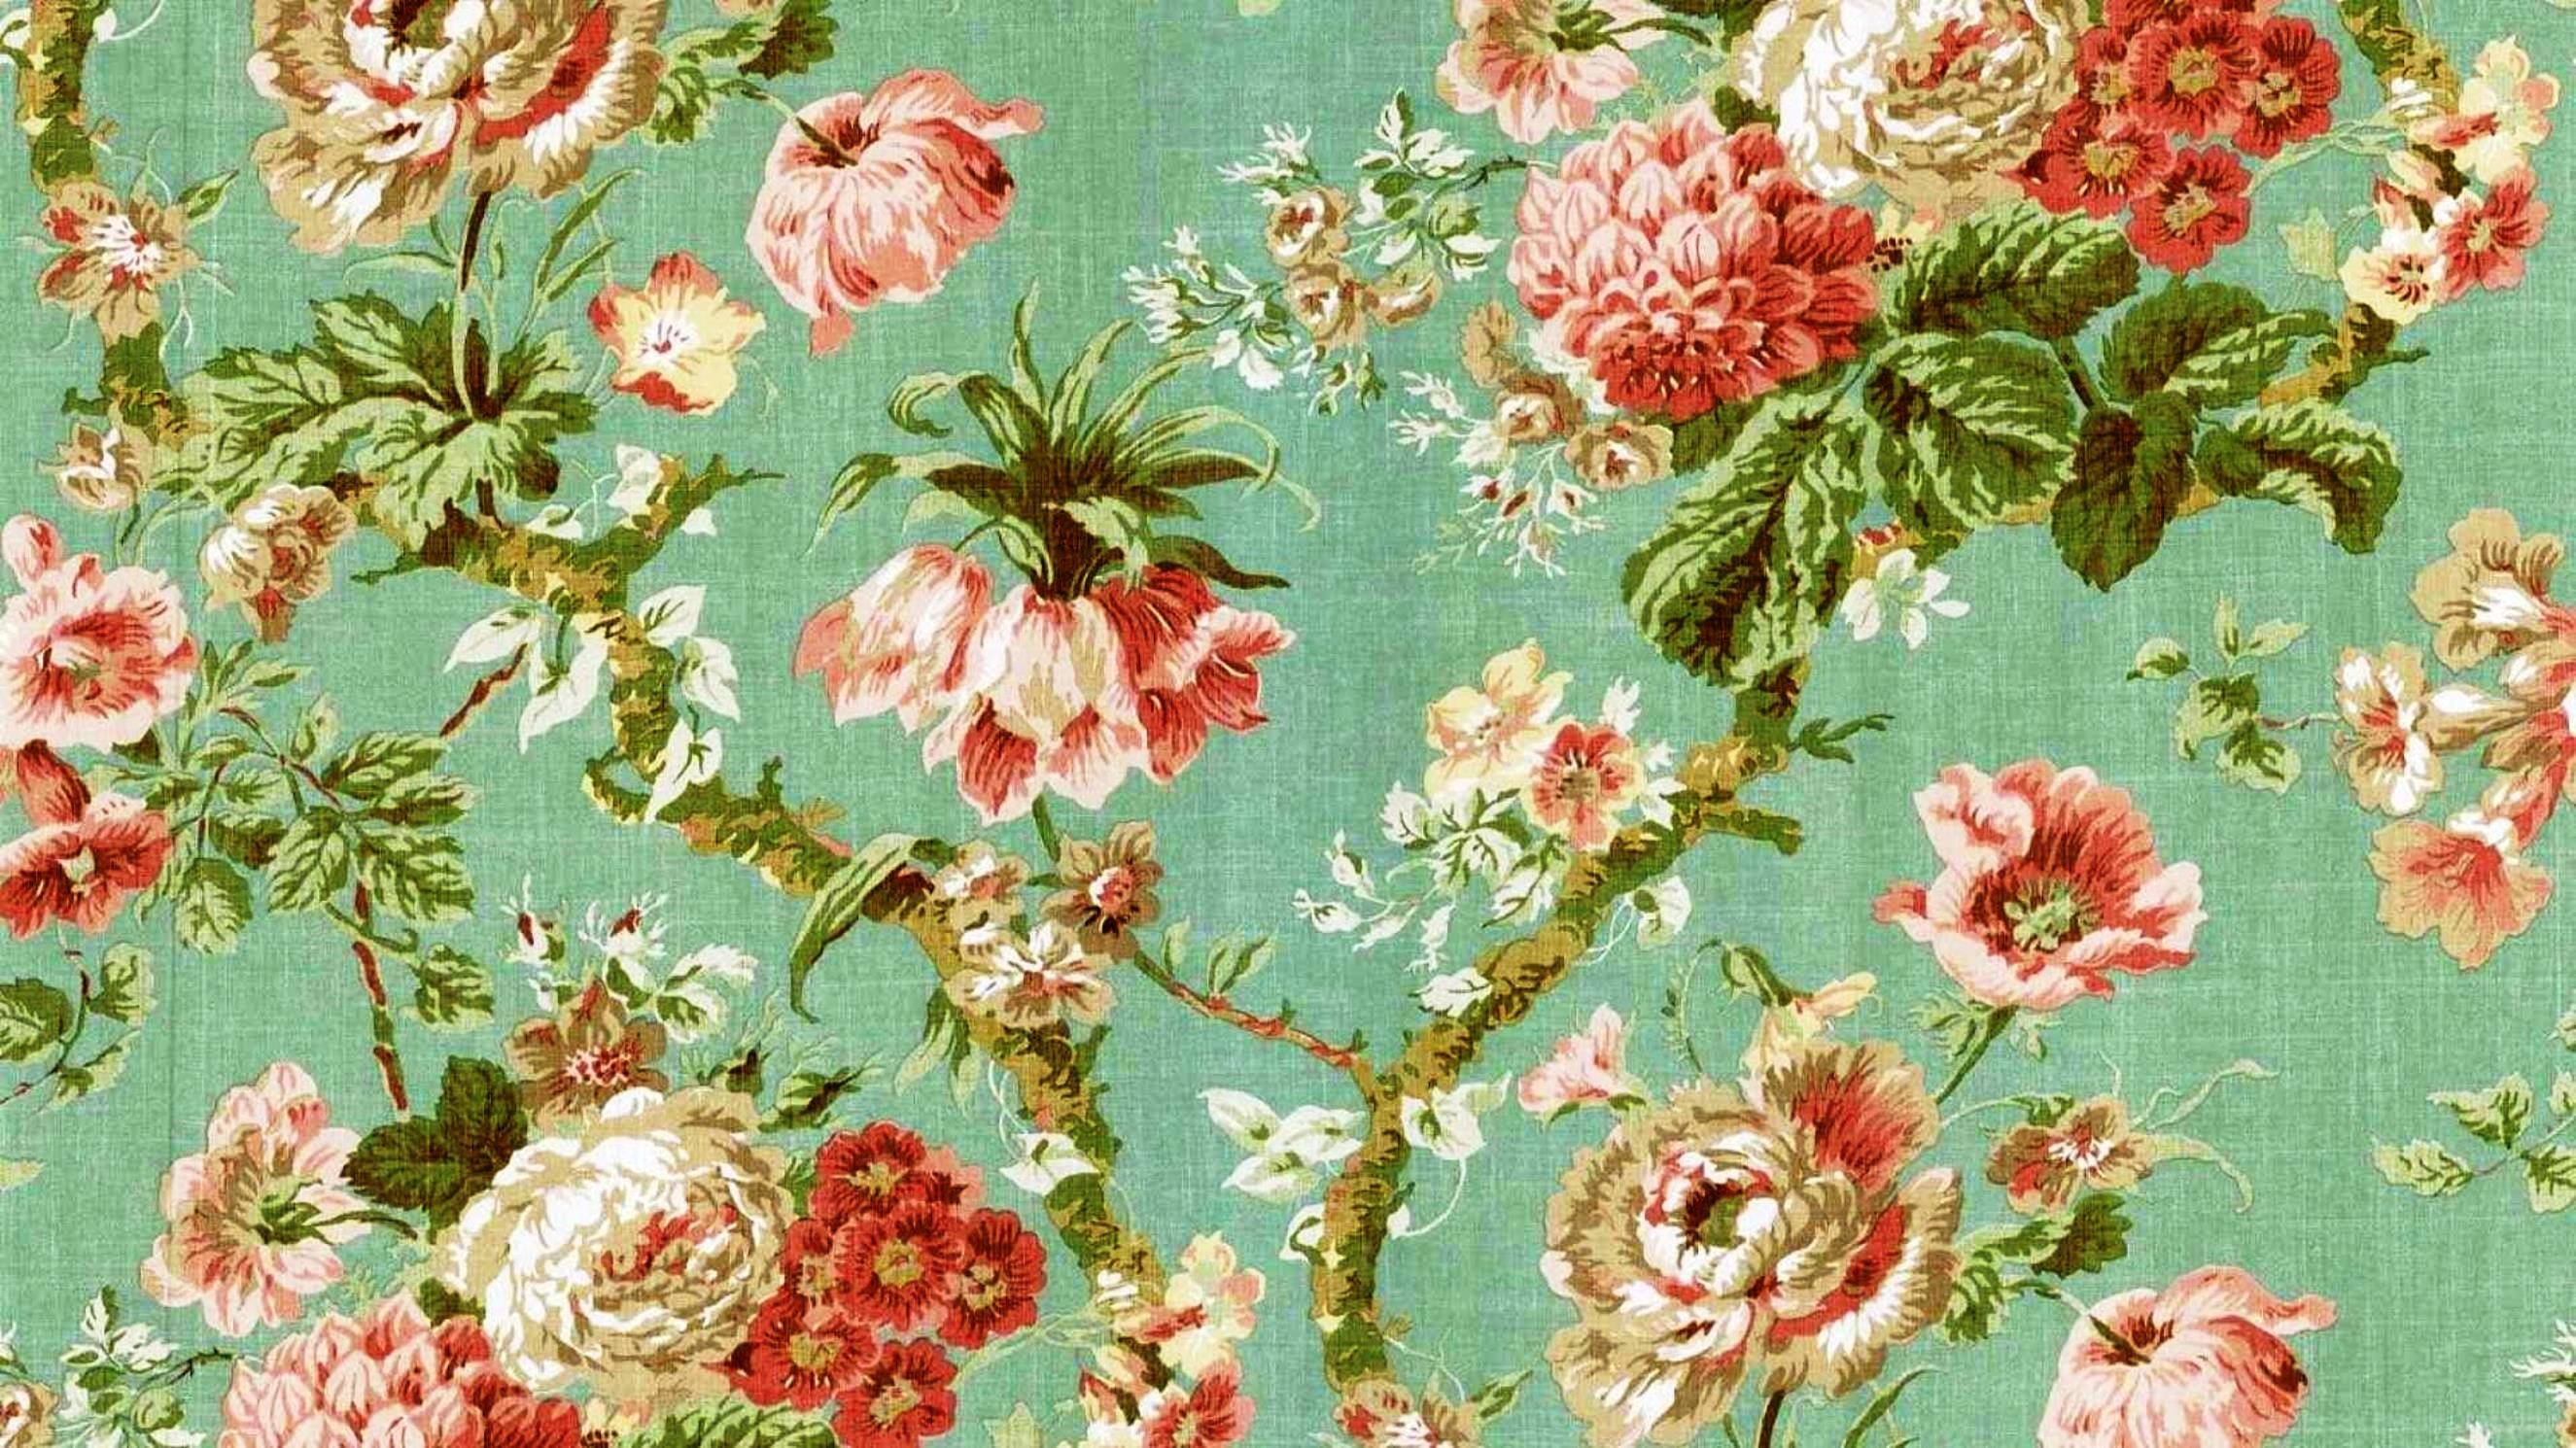 2650x1490 desktop wallpaper vintage floral